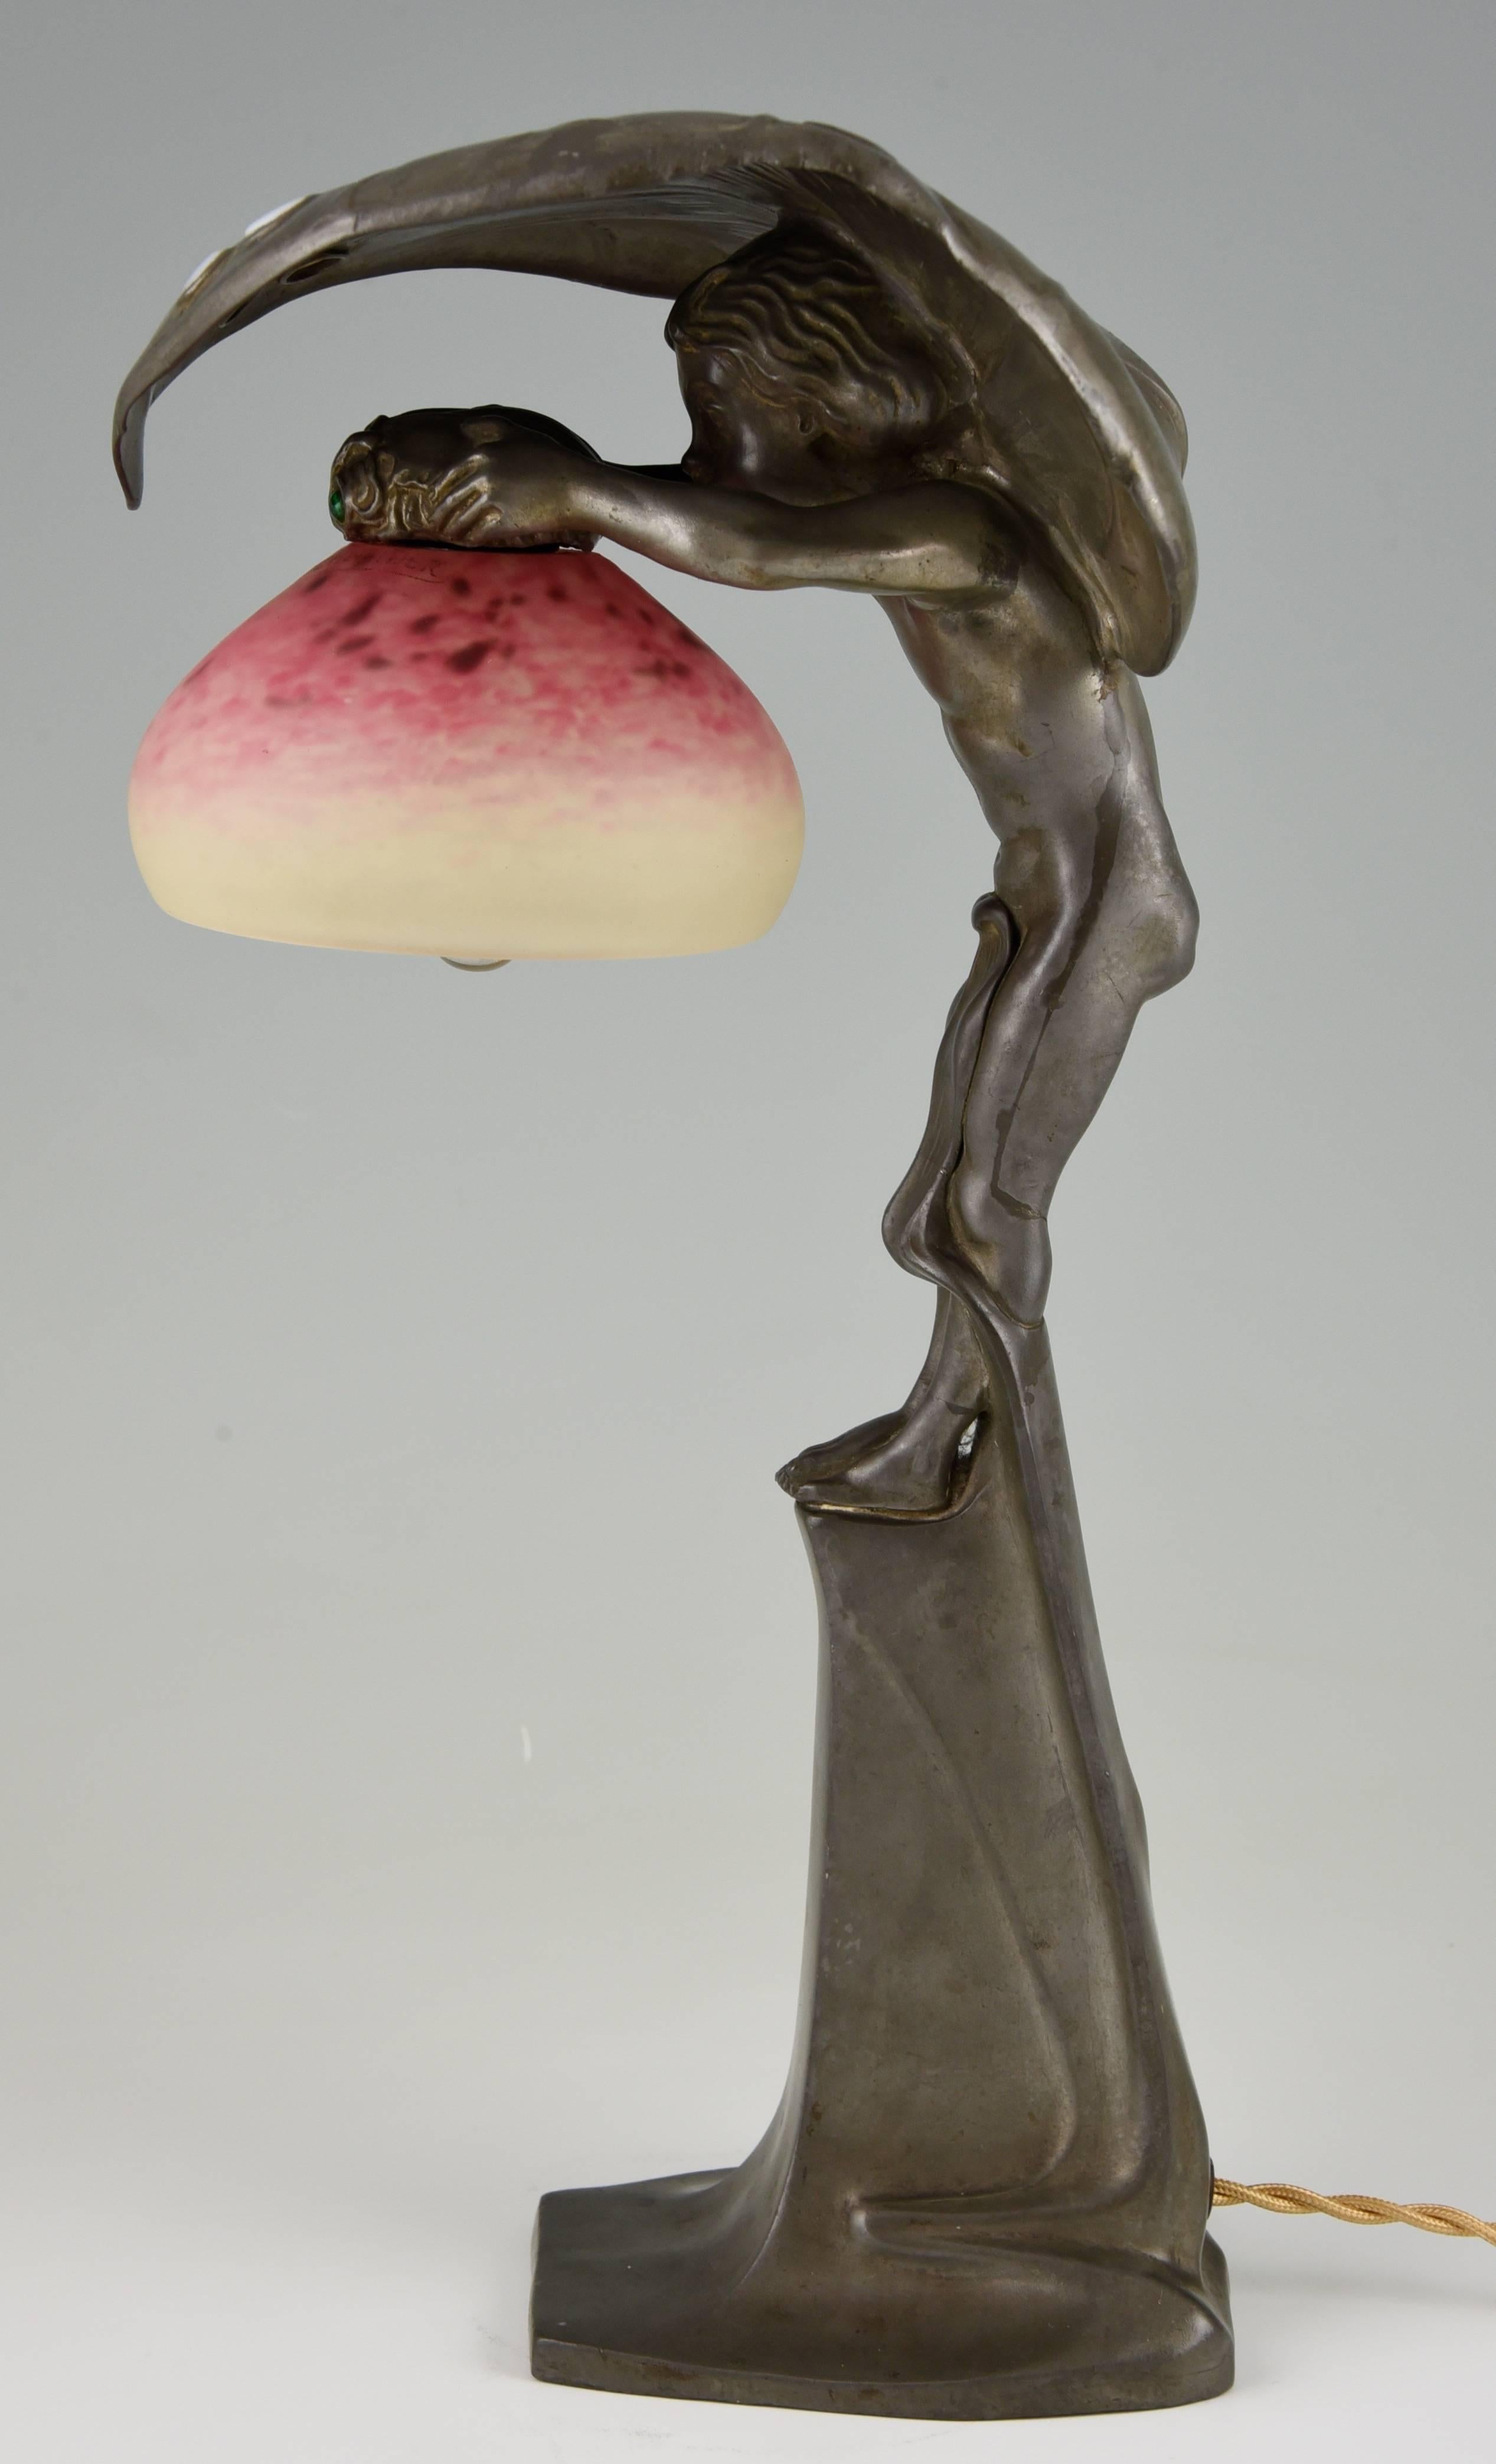 20th Century Art Nouveau Lamp with Boy under a Leaf, Osiris Peter Behrens Schule & Schneider